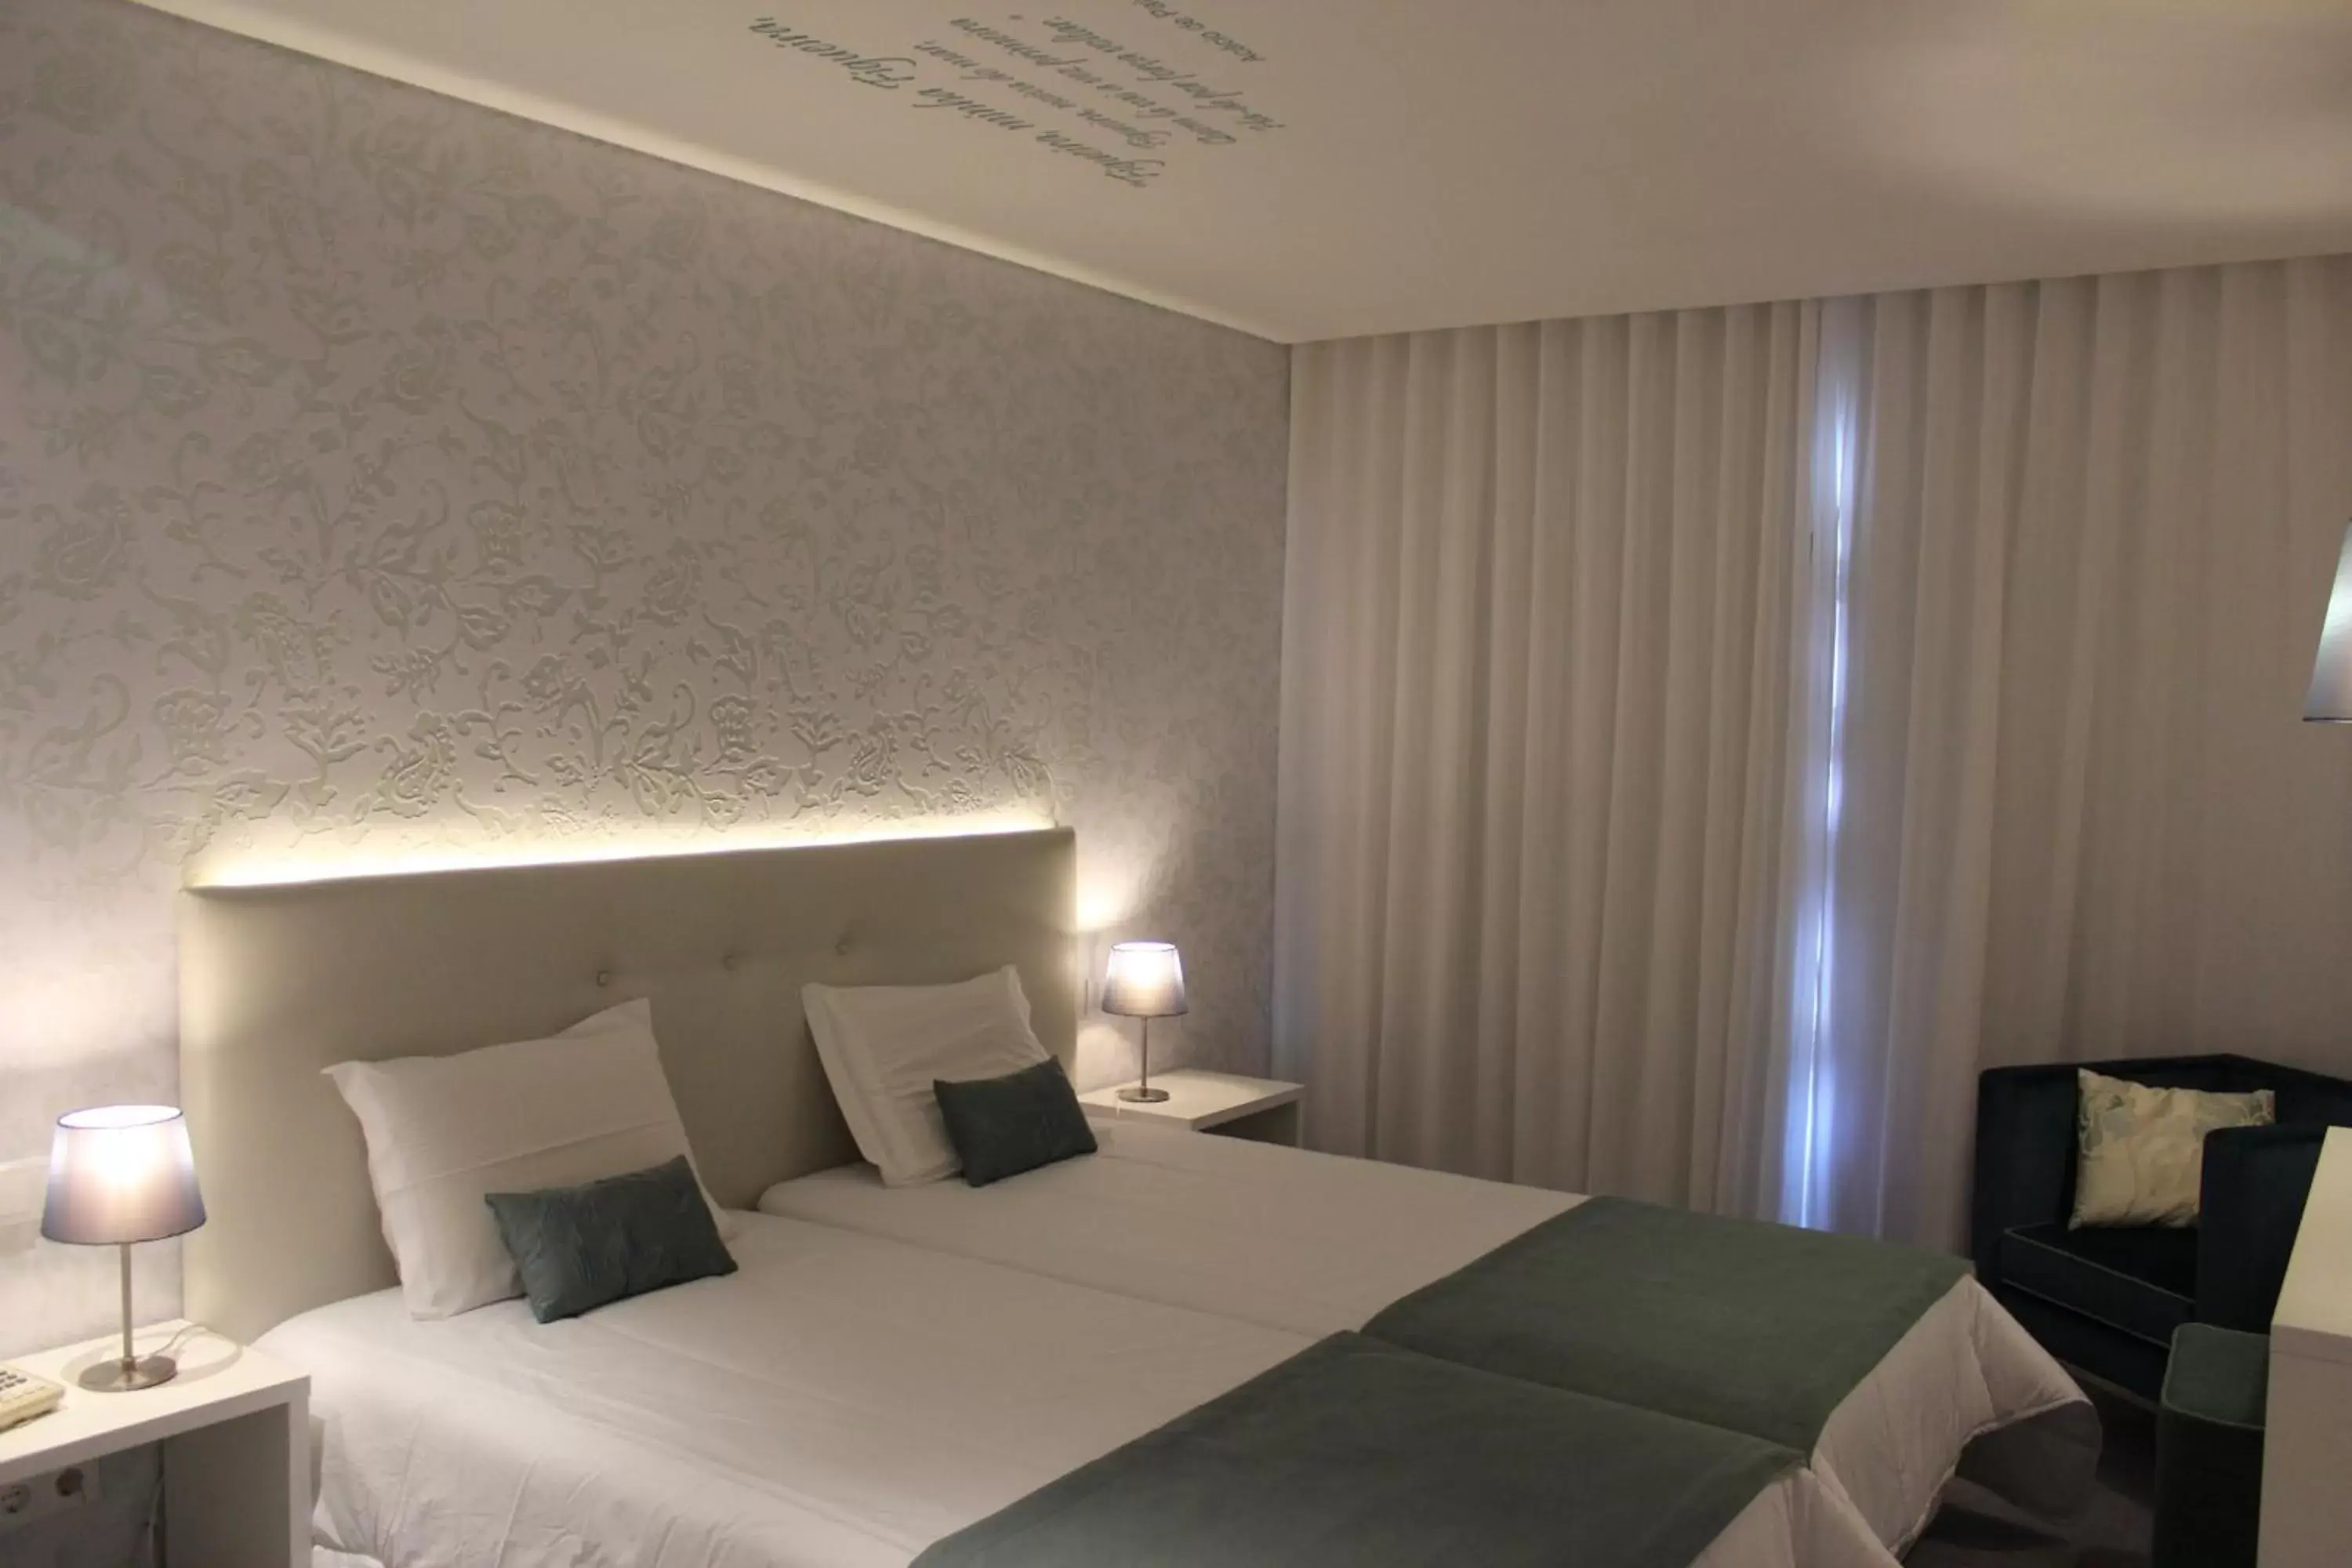 Bedroom, Bed in Costa de Prata Hotel